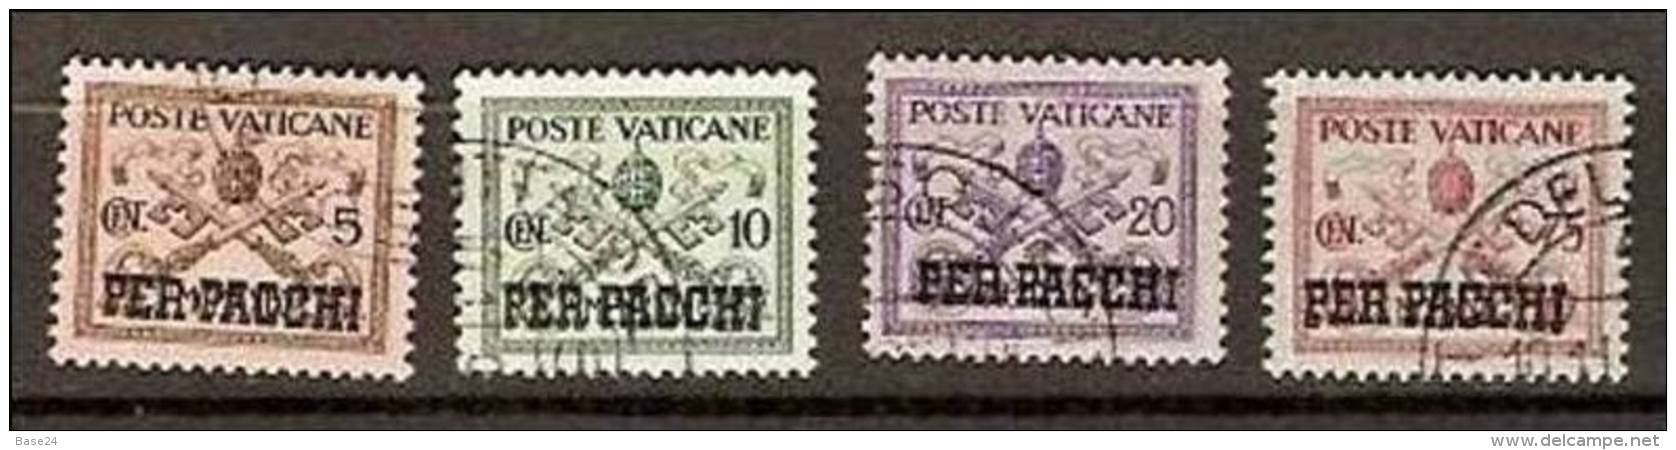 1931 Vaticano Vatican PACCHI POSTALI  5c+10c+20c+75c Usati USED Parcel Post - Paquetes Postales